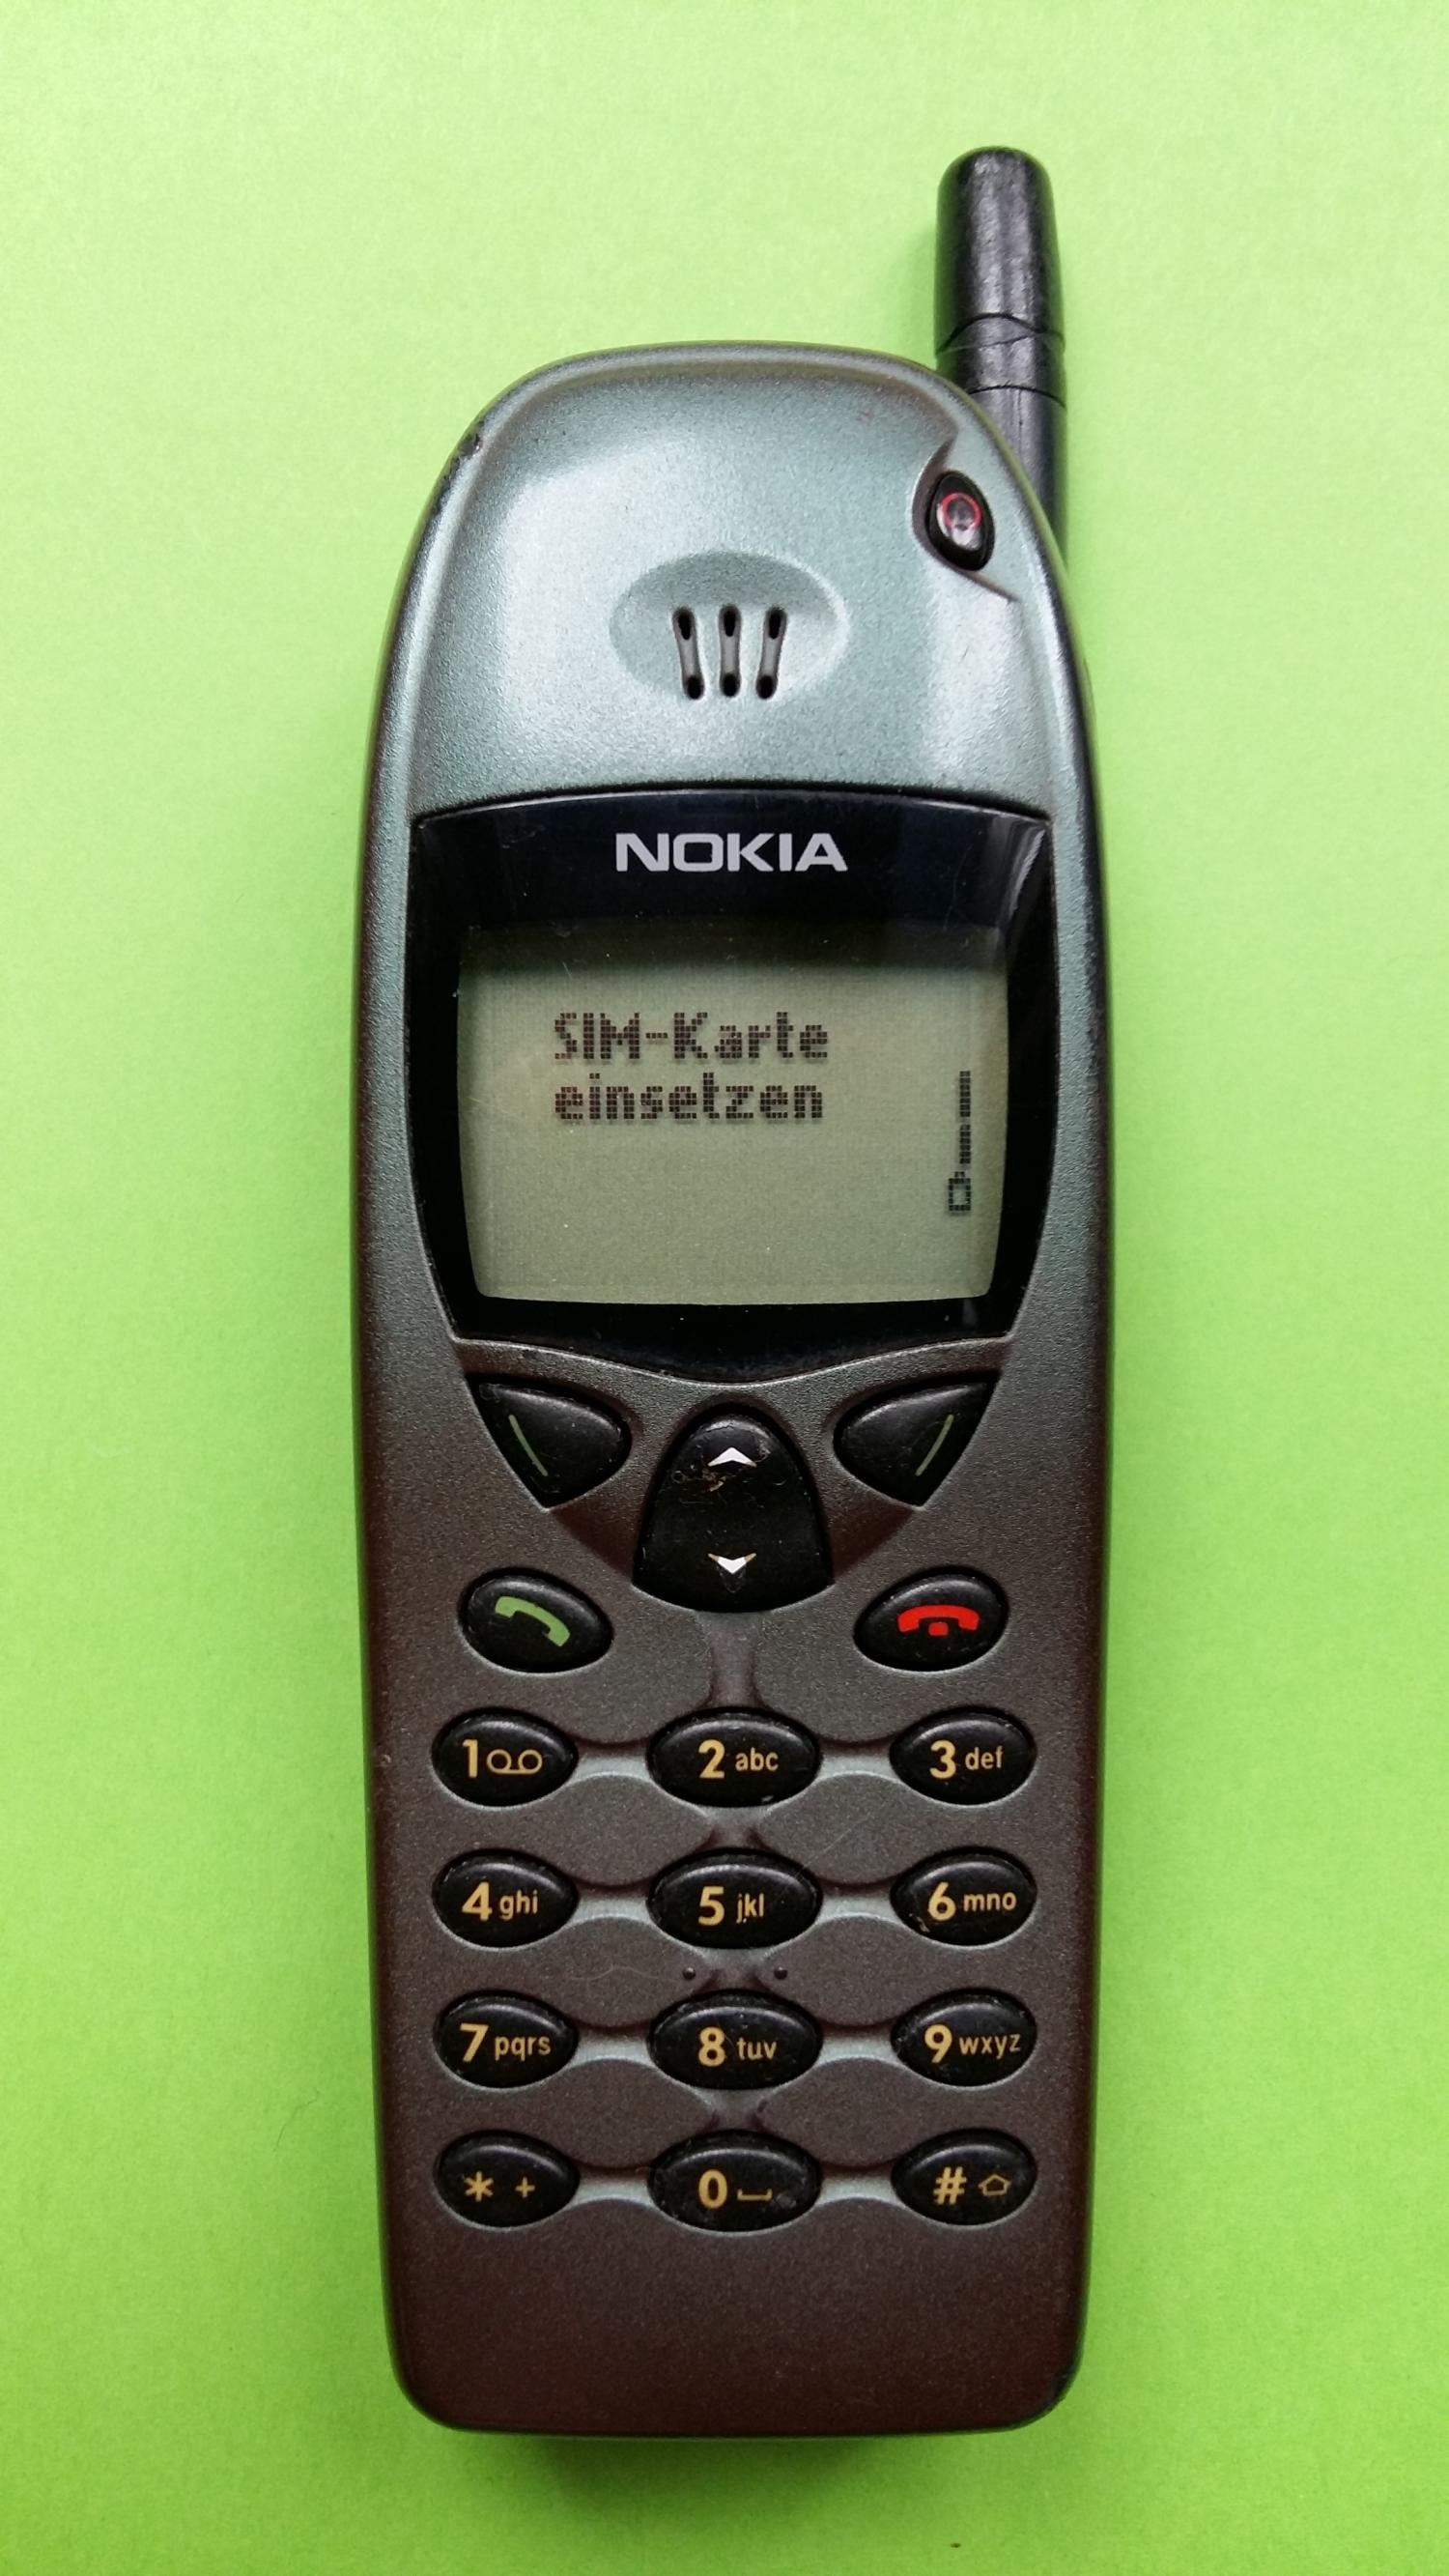 image-7305010-Nokia 6110 (10)1.jpg